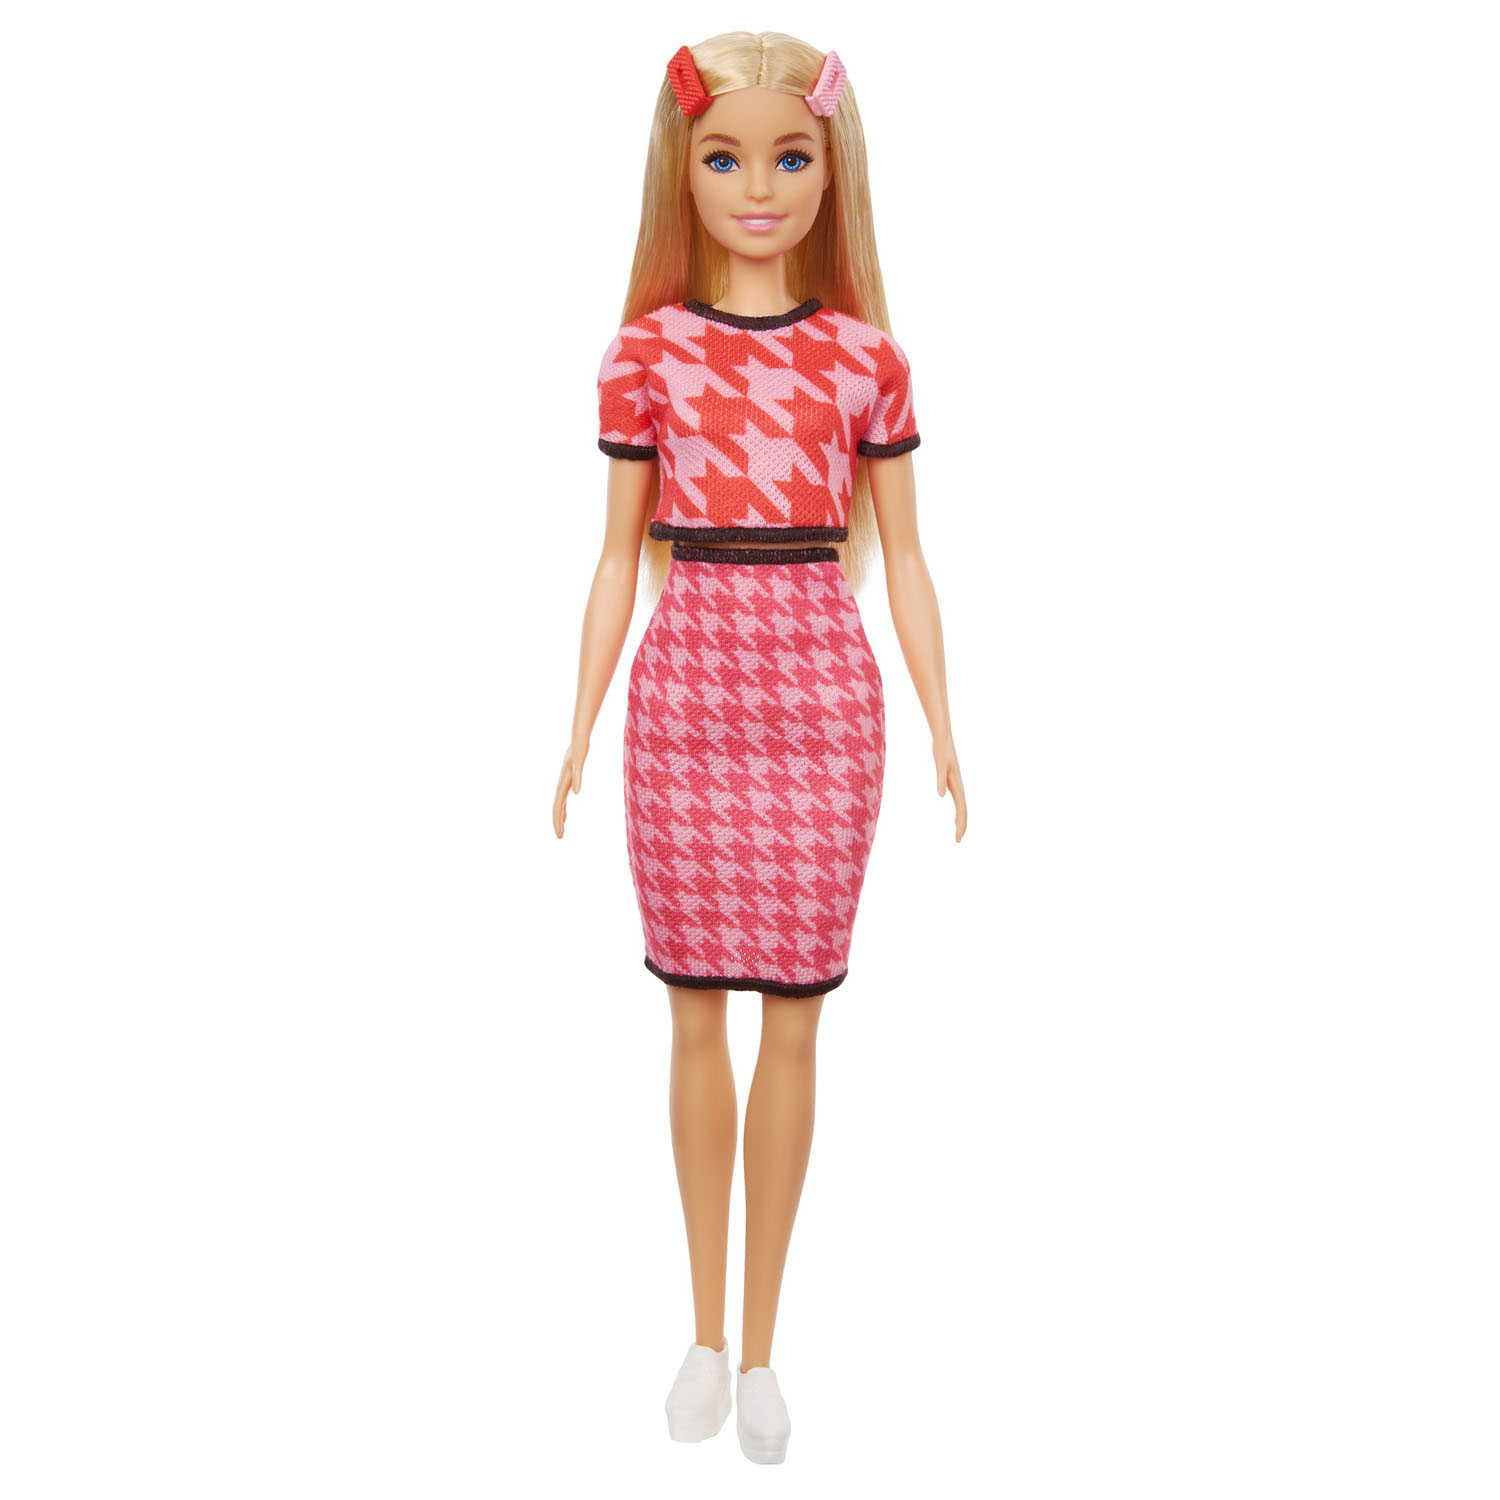 Barbie Puppe Kleider-Hello Kitty Pink TOP 